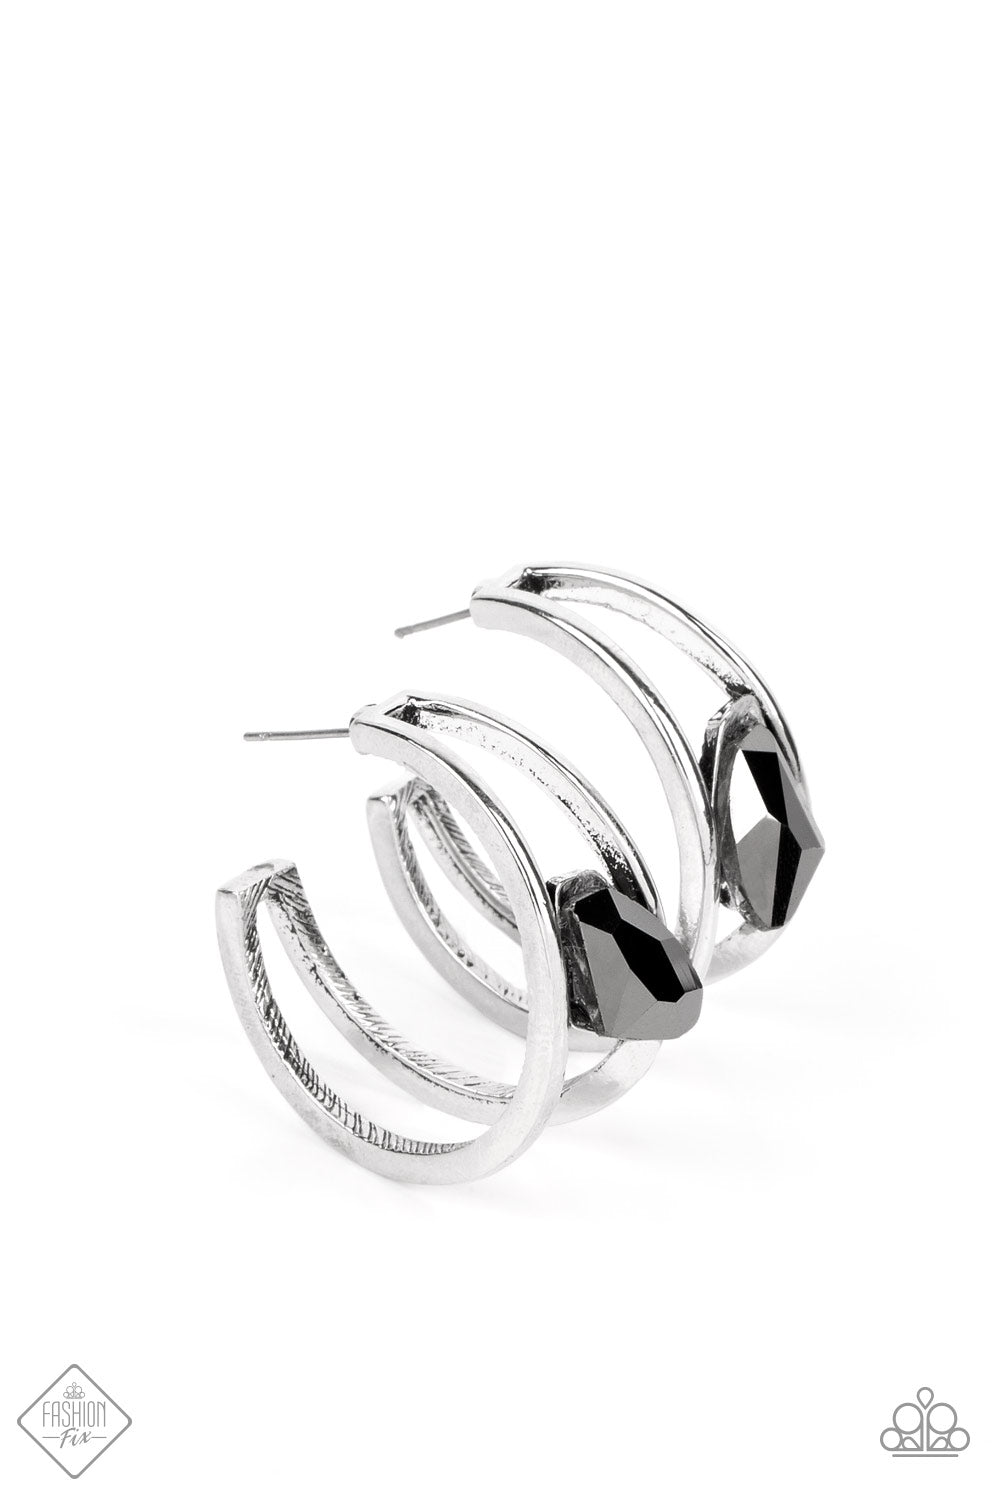 Unrefined Reverie - silver - Paparazzi earrings